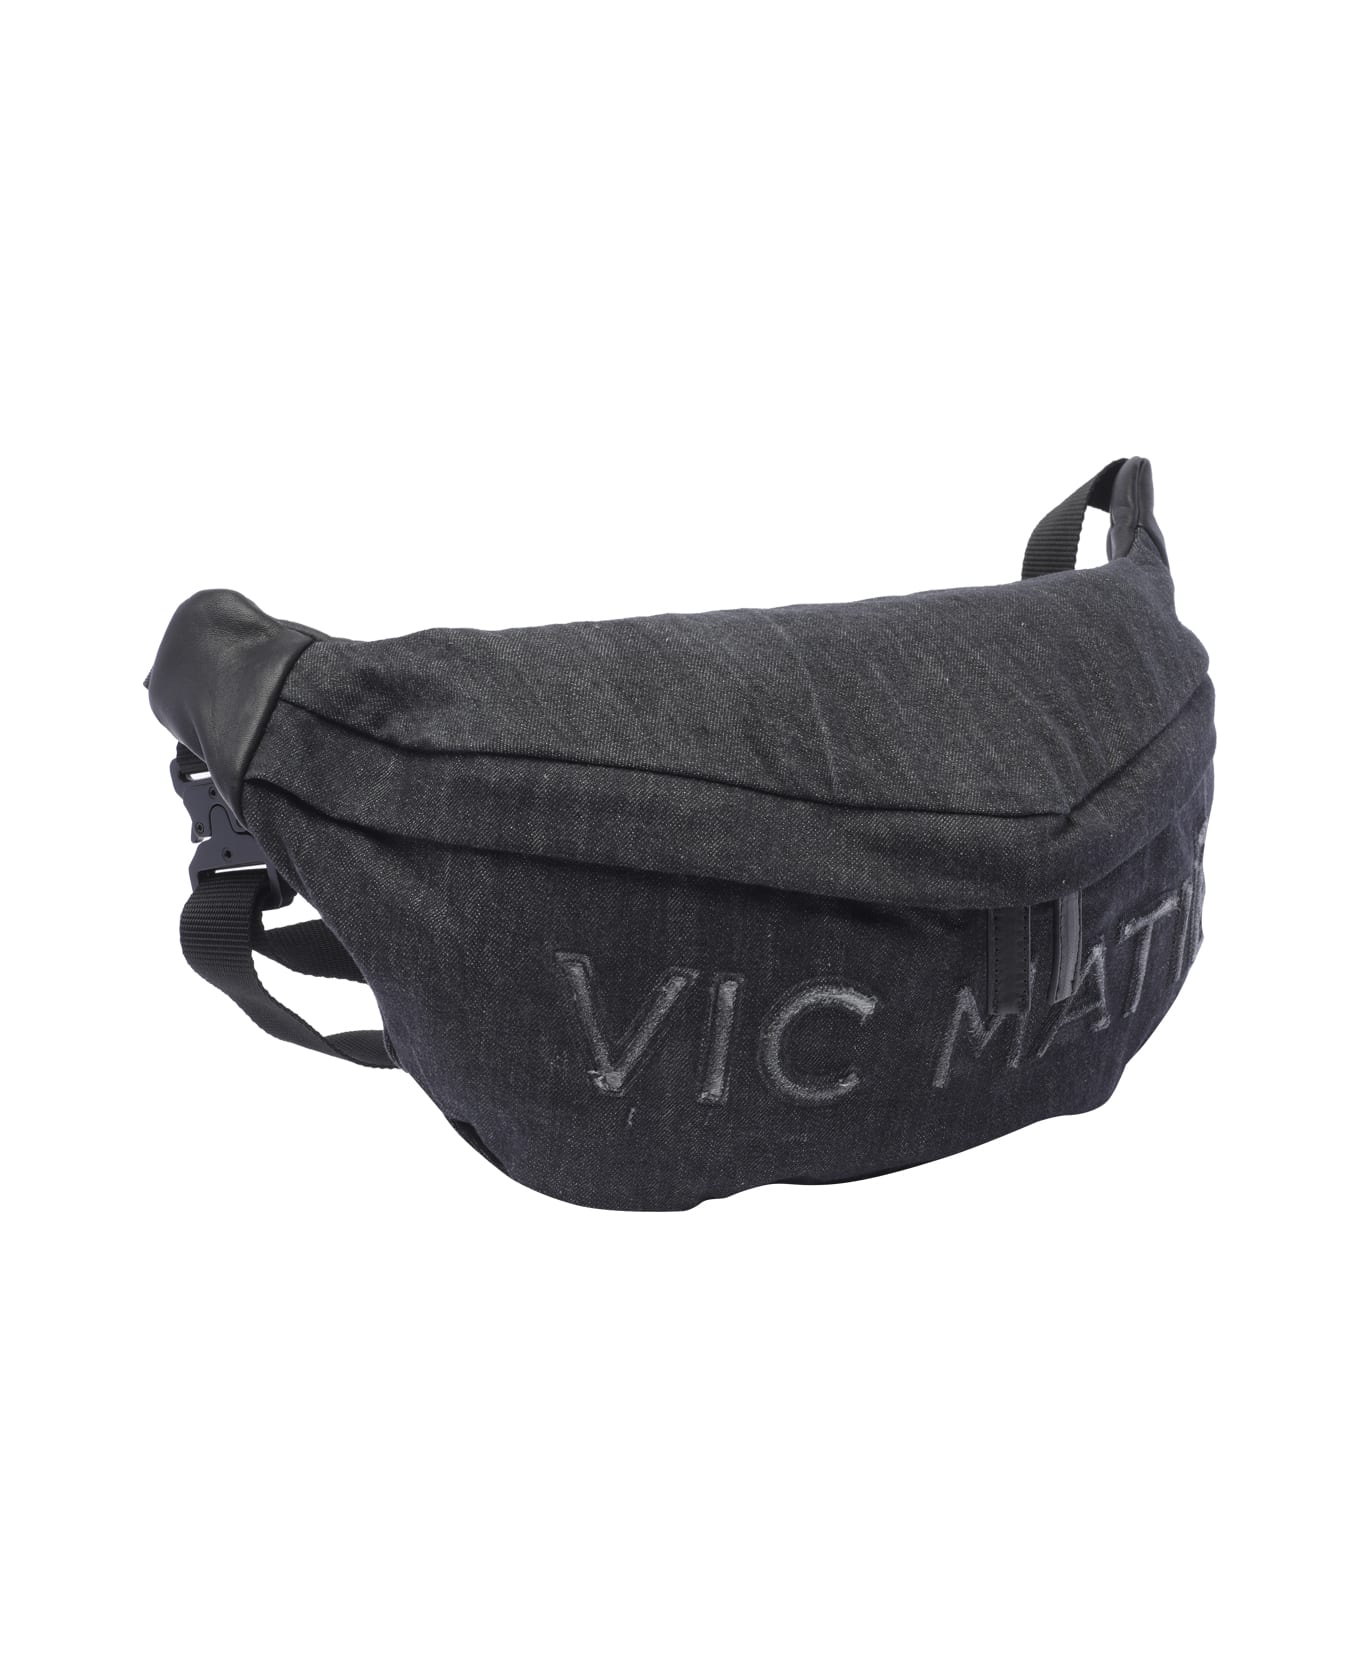 Vic Matié Logo Belt Bag - Black